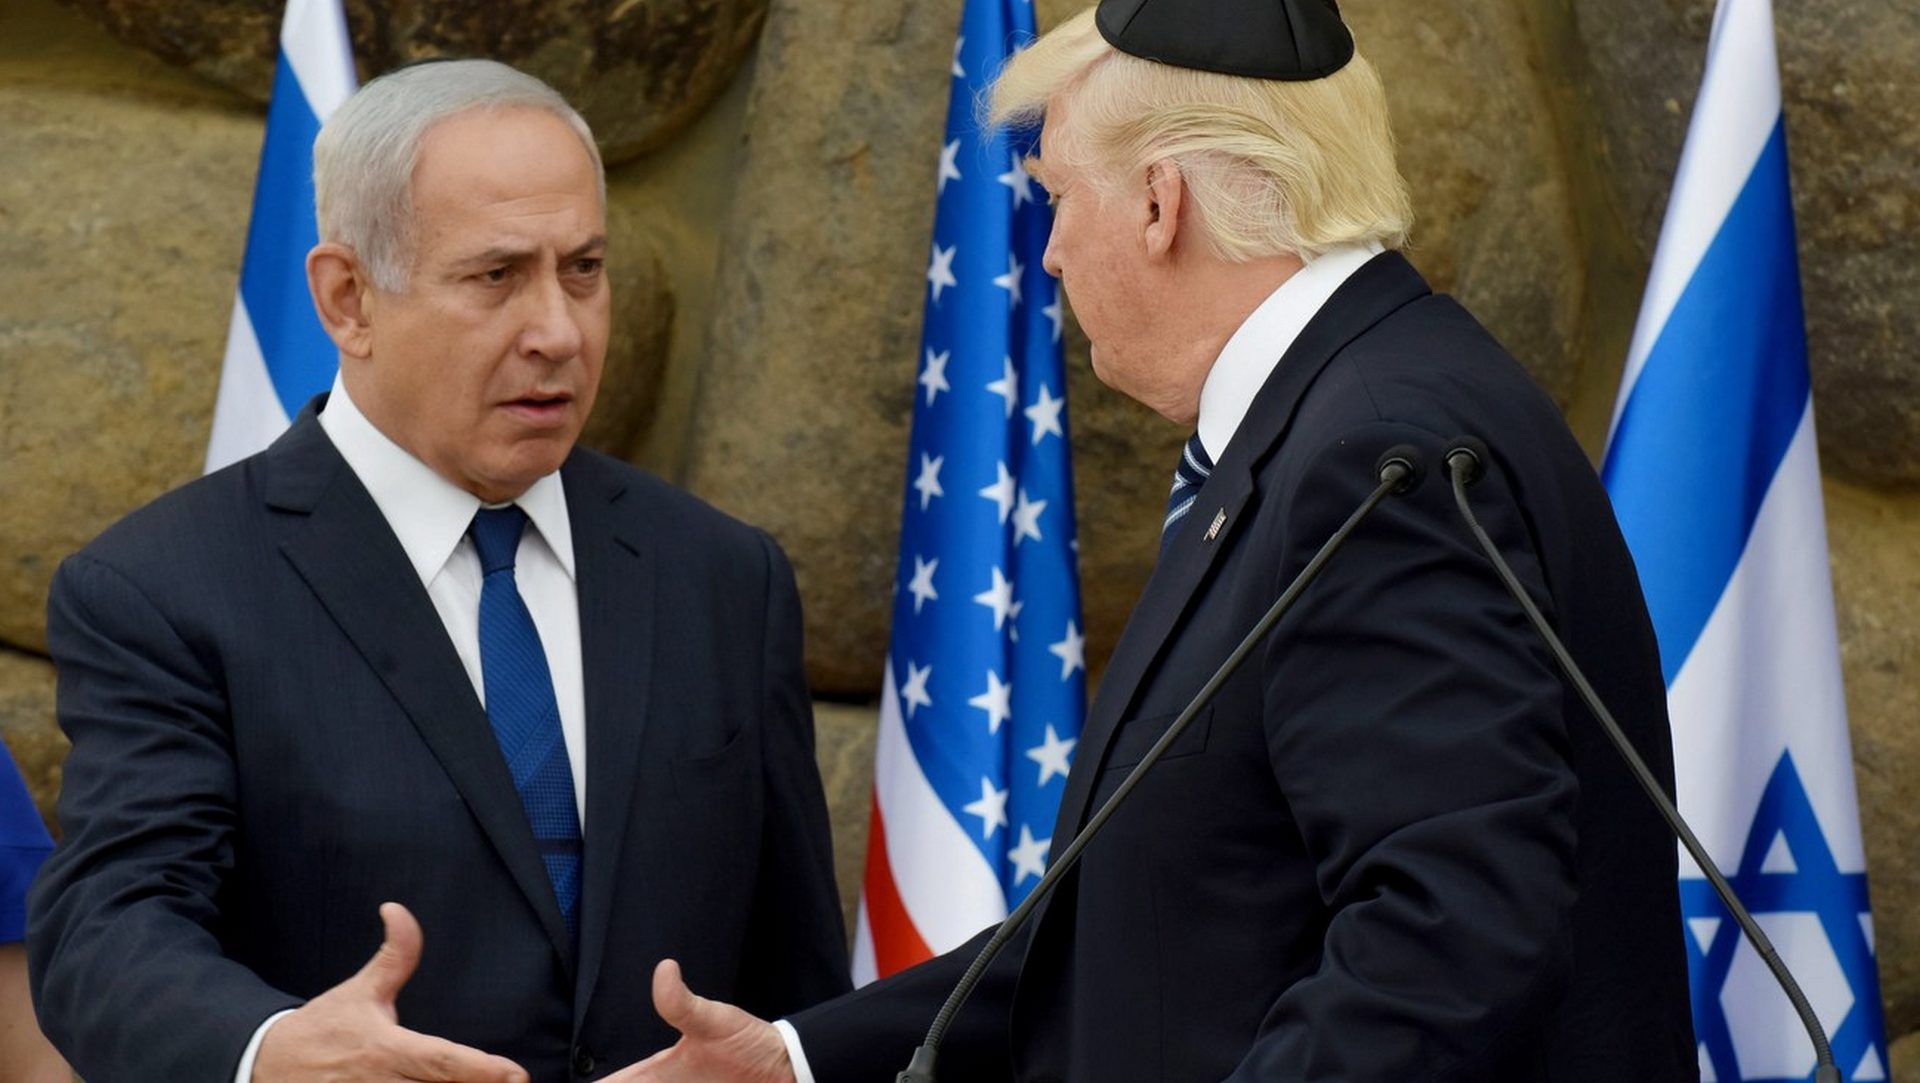 Le premier ministre israélien reçoit le président Trump en 2017 à Yad Vashem | © Keystone/epa/Debbie Hill 